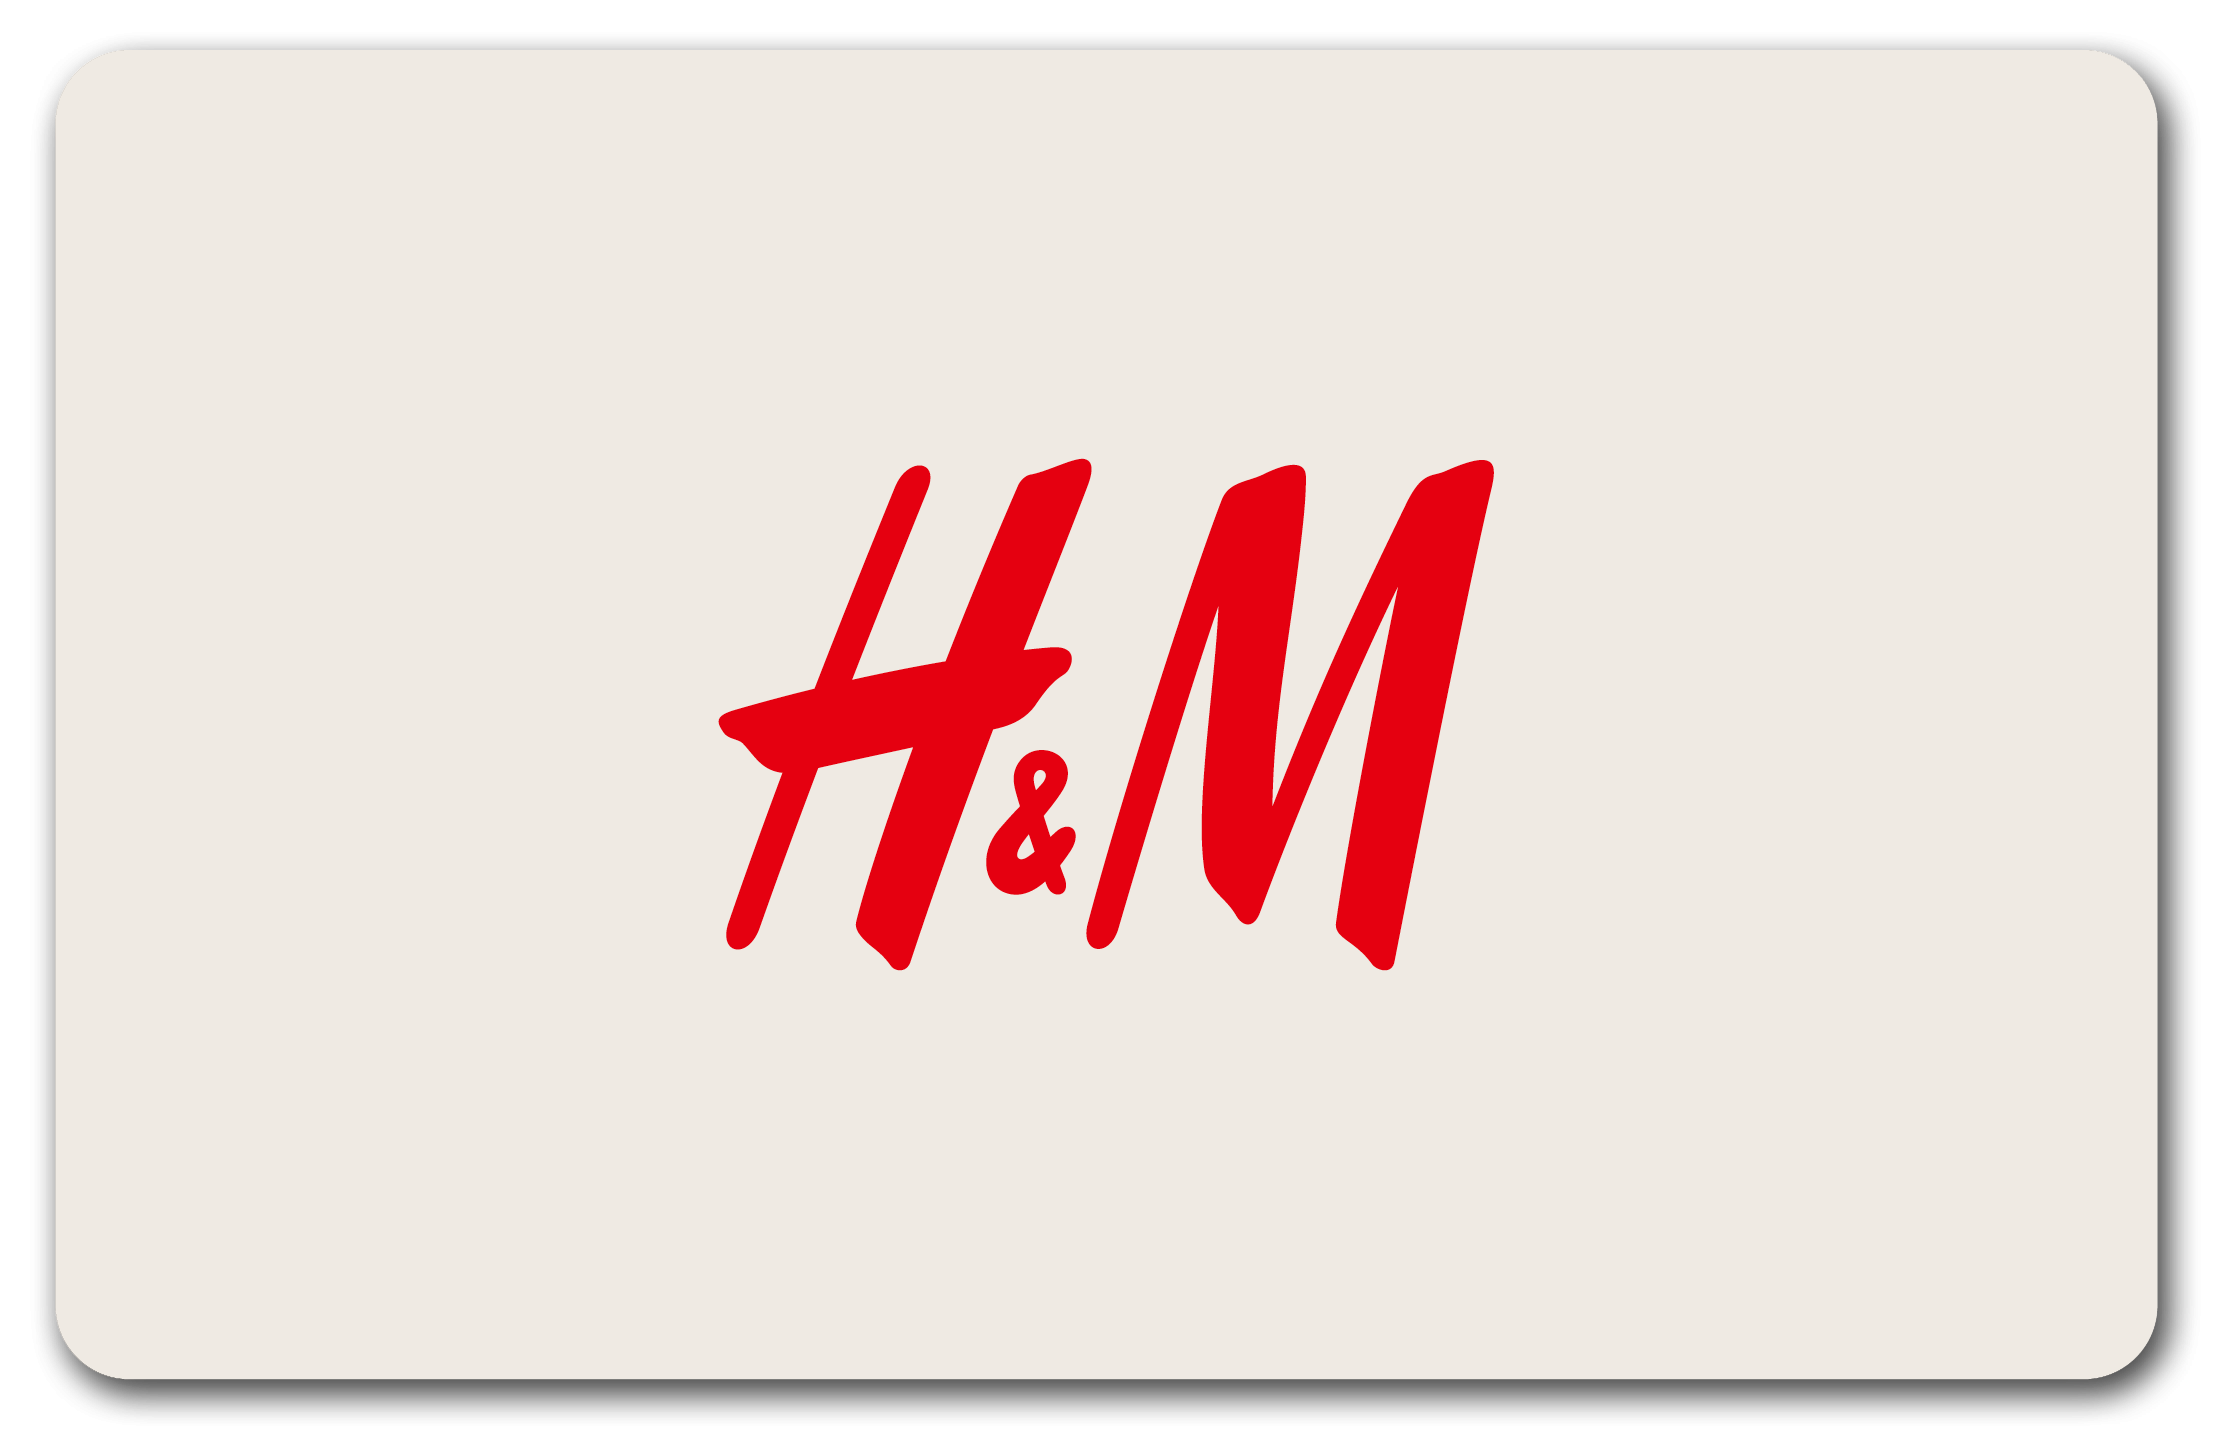 H&M Nice